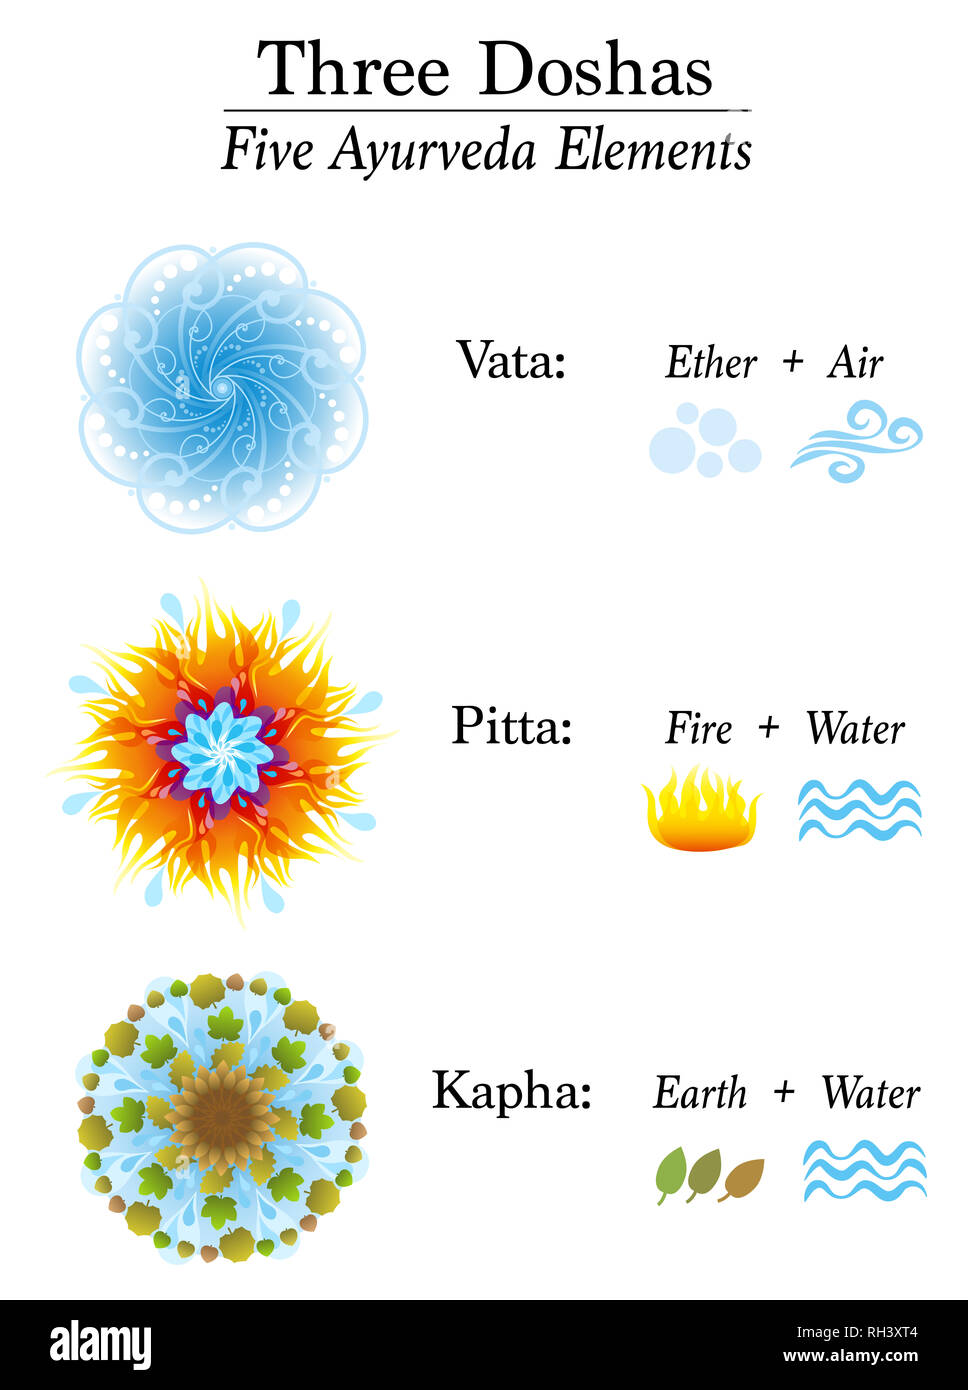 Graphique avec trois Doshas et leur cinq éléments - Ayurveda Vata, Pitta, Kapha - l'éther, Air, Feu, Eau et terre. Symboles d'Ayurvedic. Banque D'Images